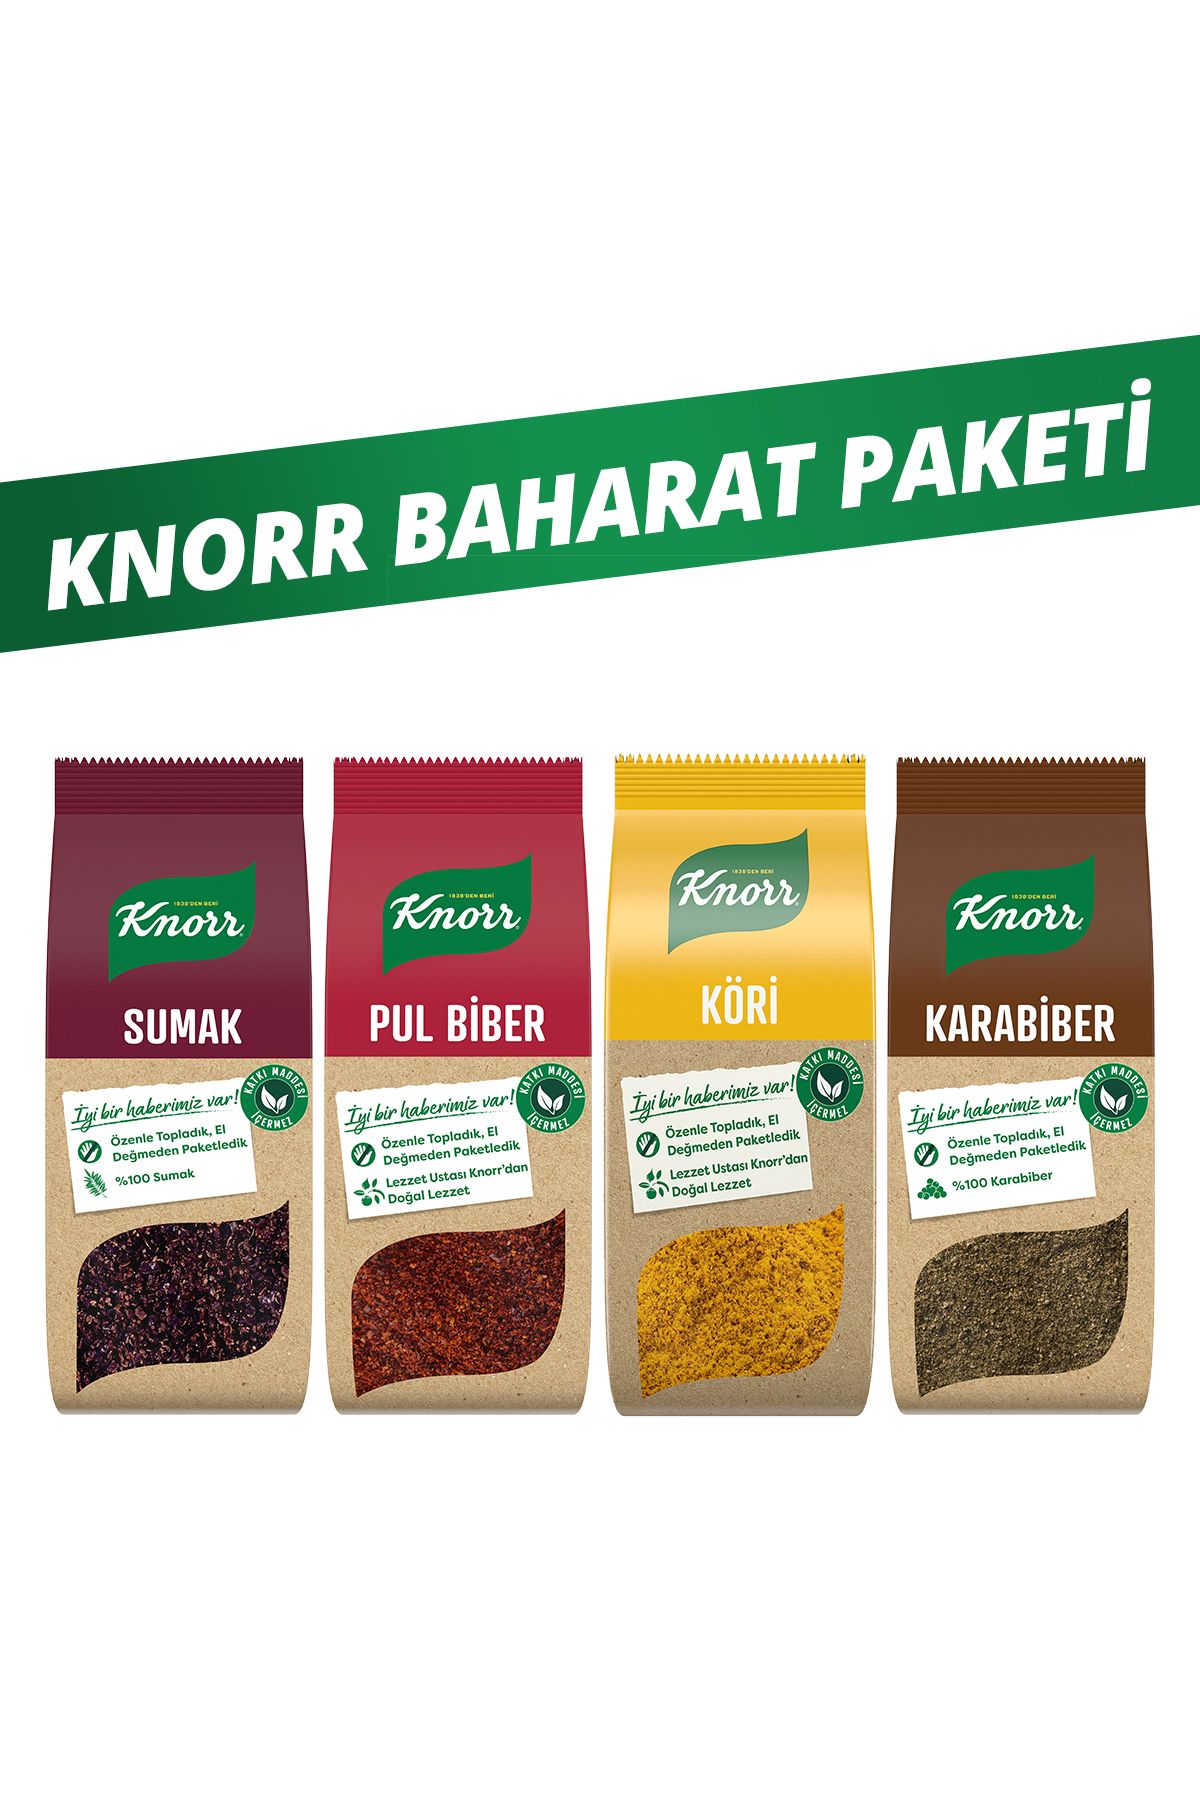 Knorr Baharat Paketi Pul Biber Karabiber Köri Sumak